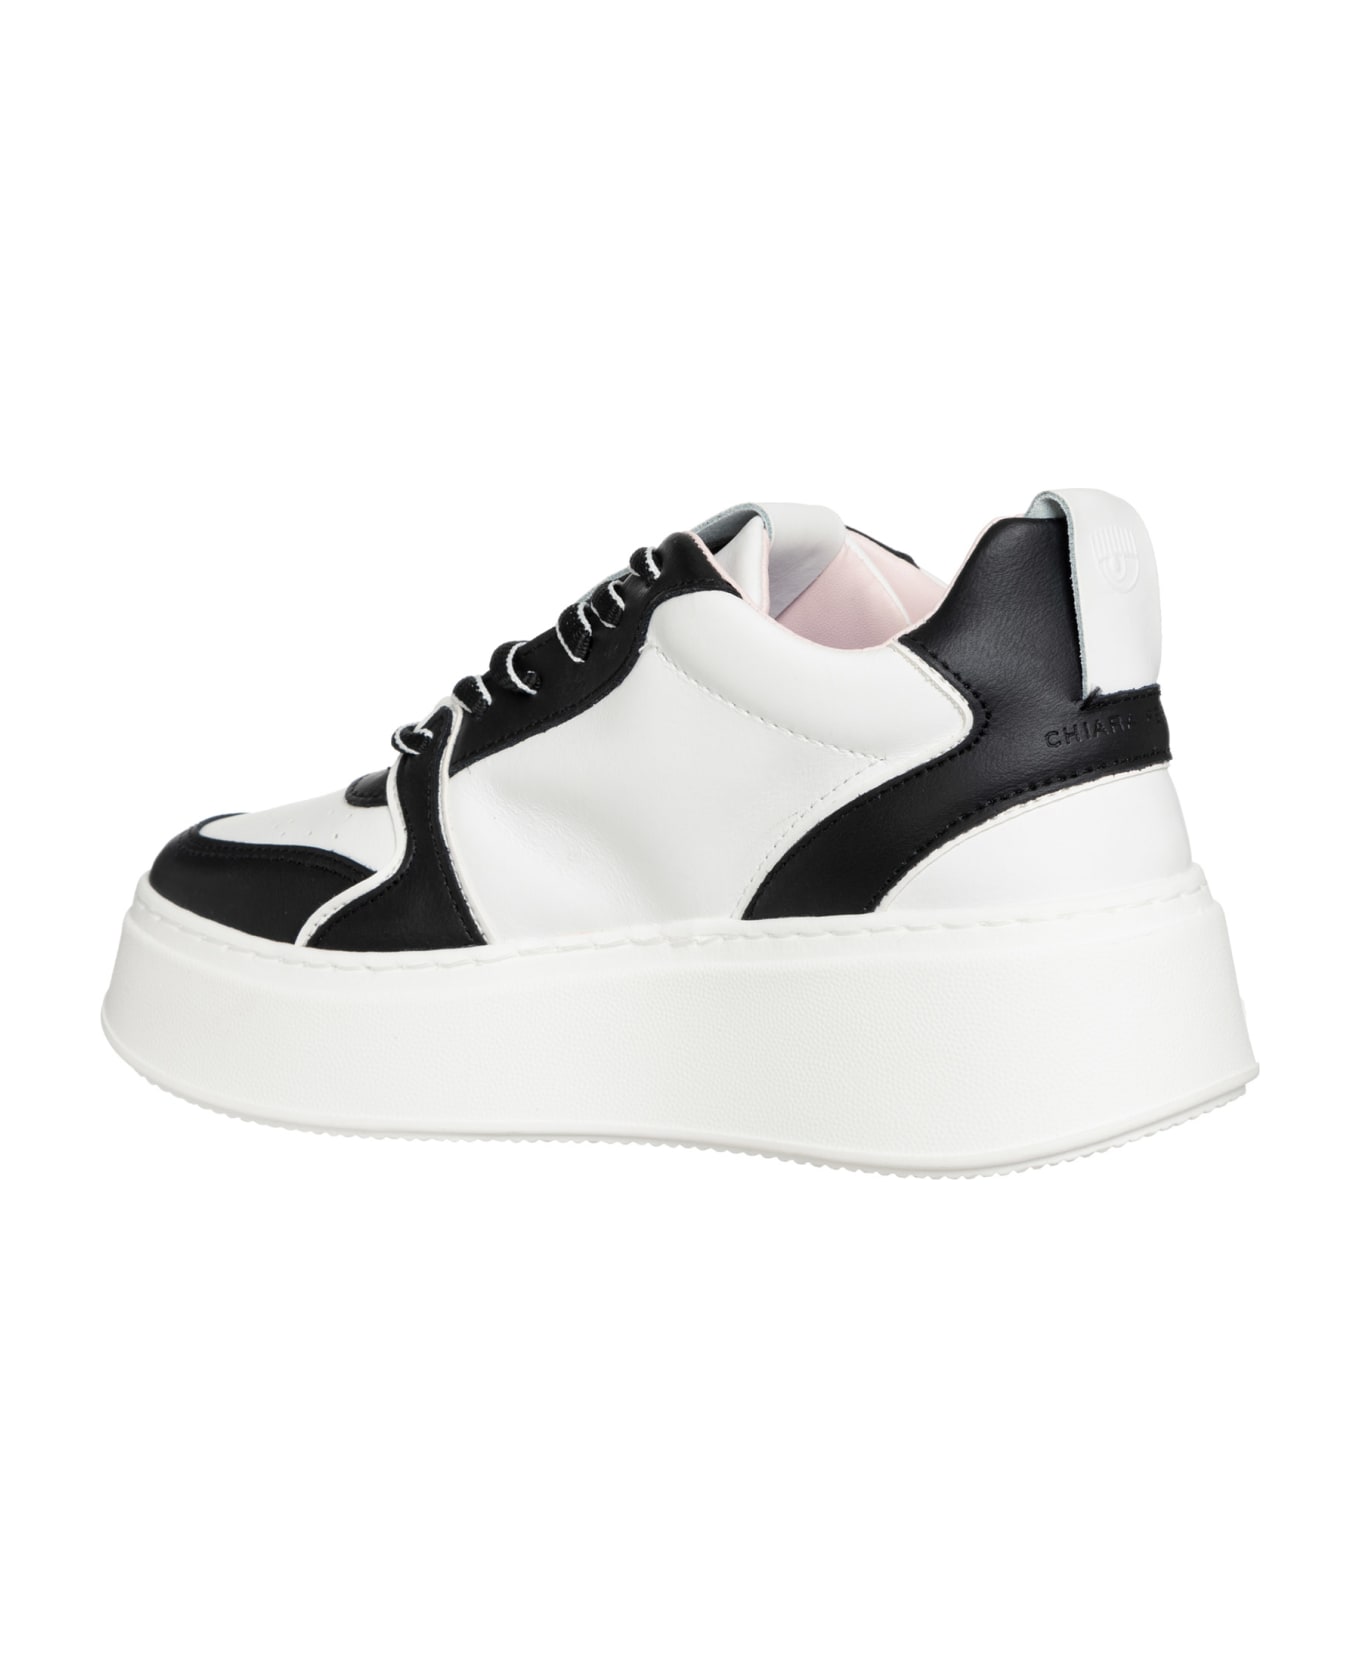 Chiara Ferragni School Leather Sneakers Chiara Ferragni - WHITE/BLACK